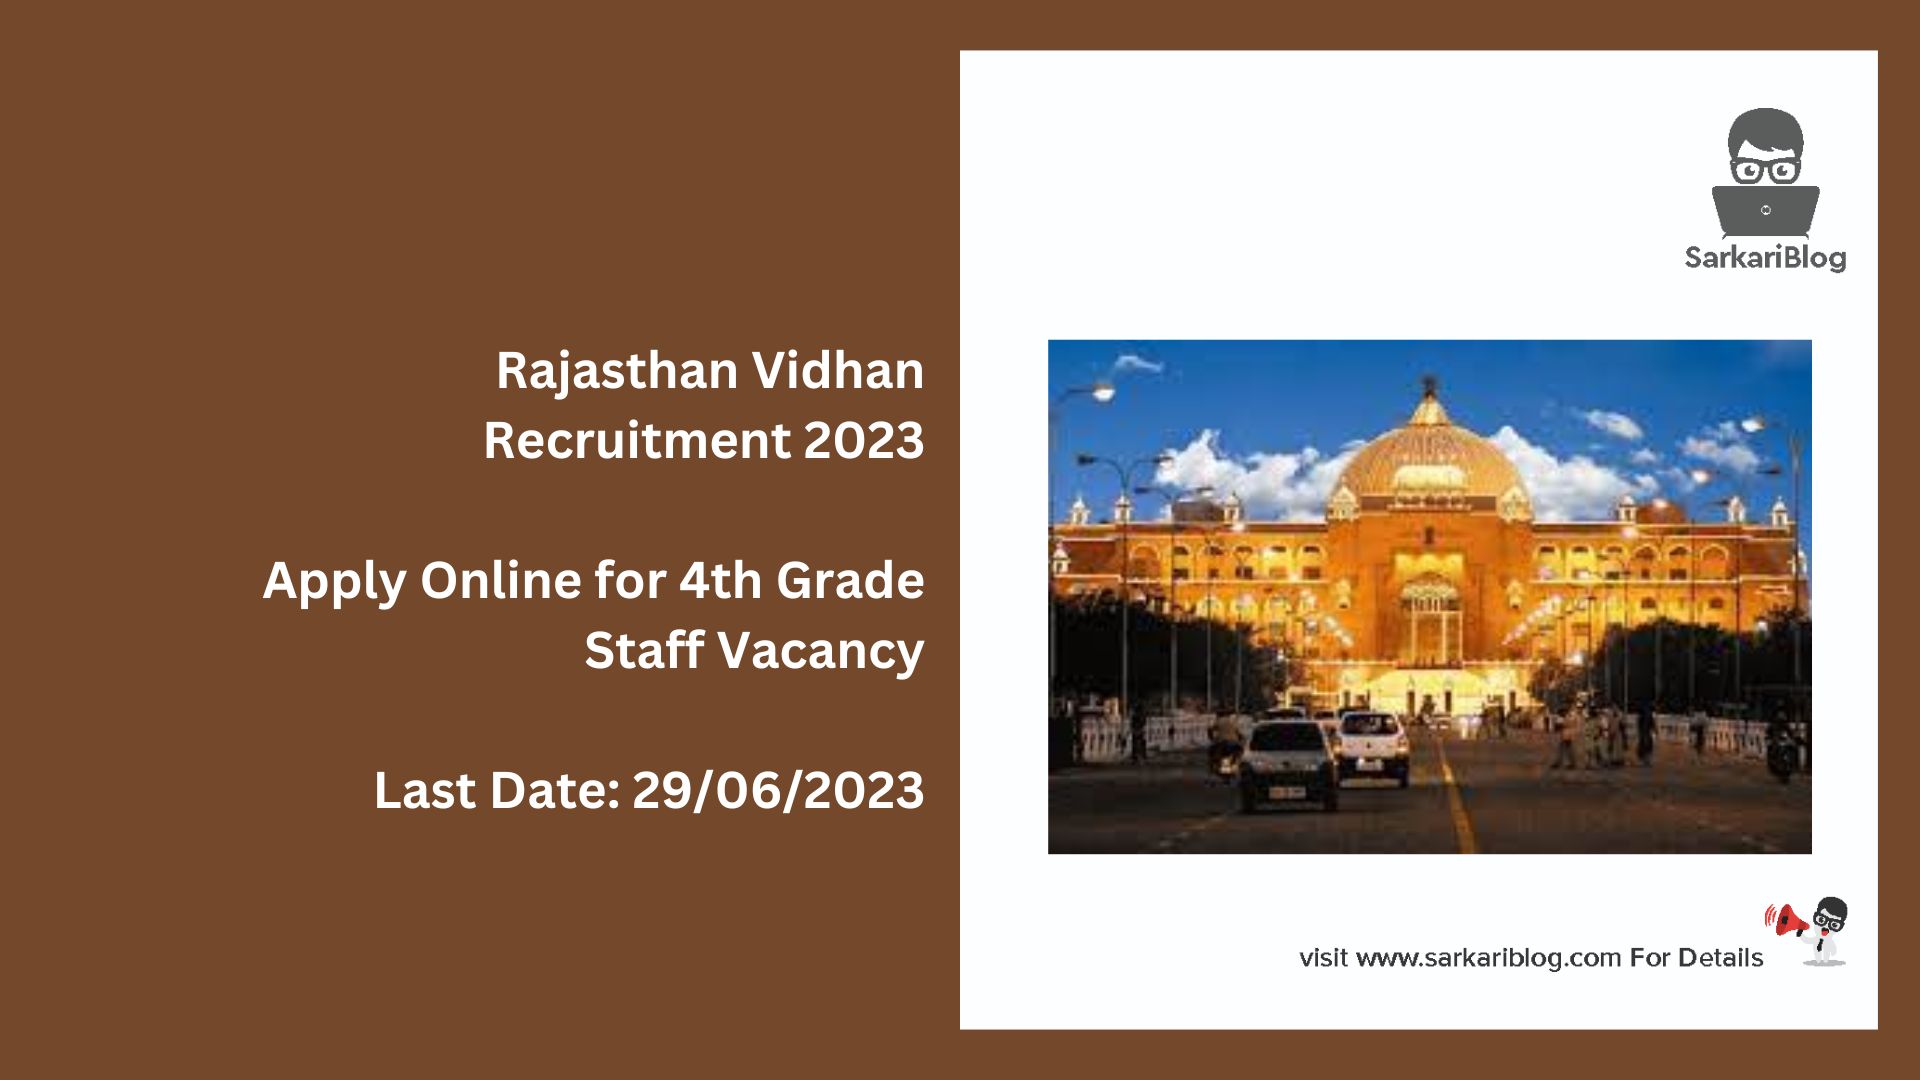 Rajasthan Vidhan Recruitment 2023